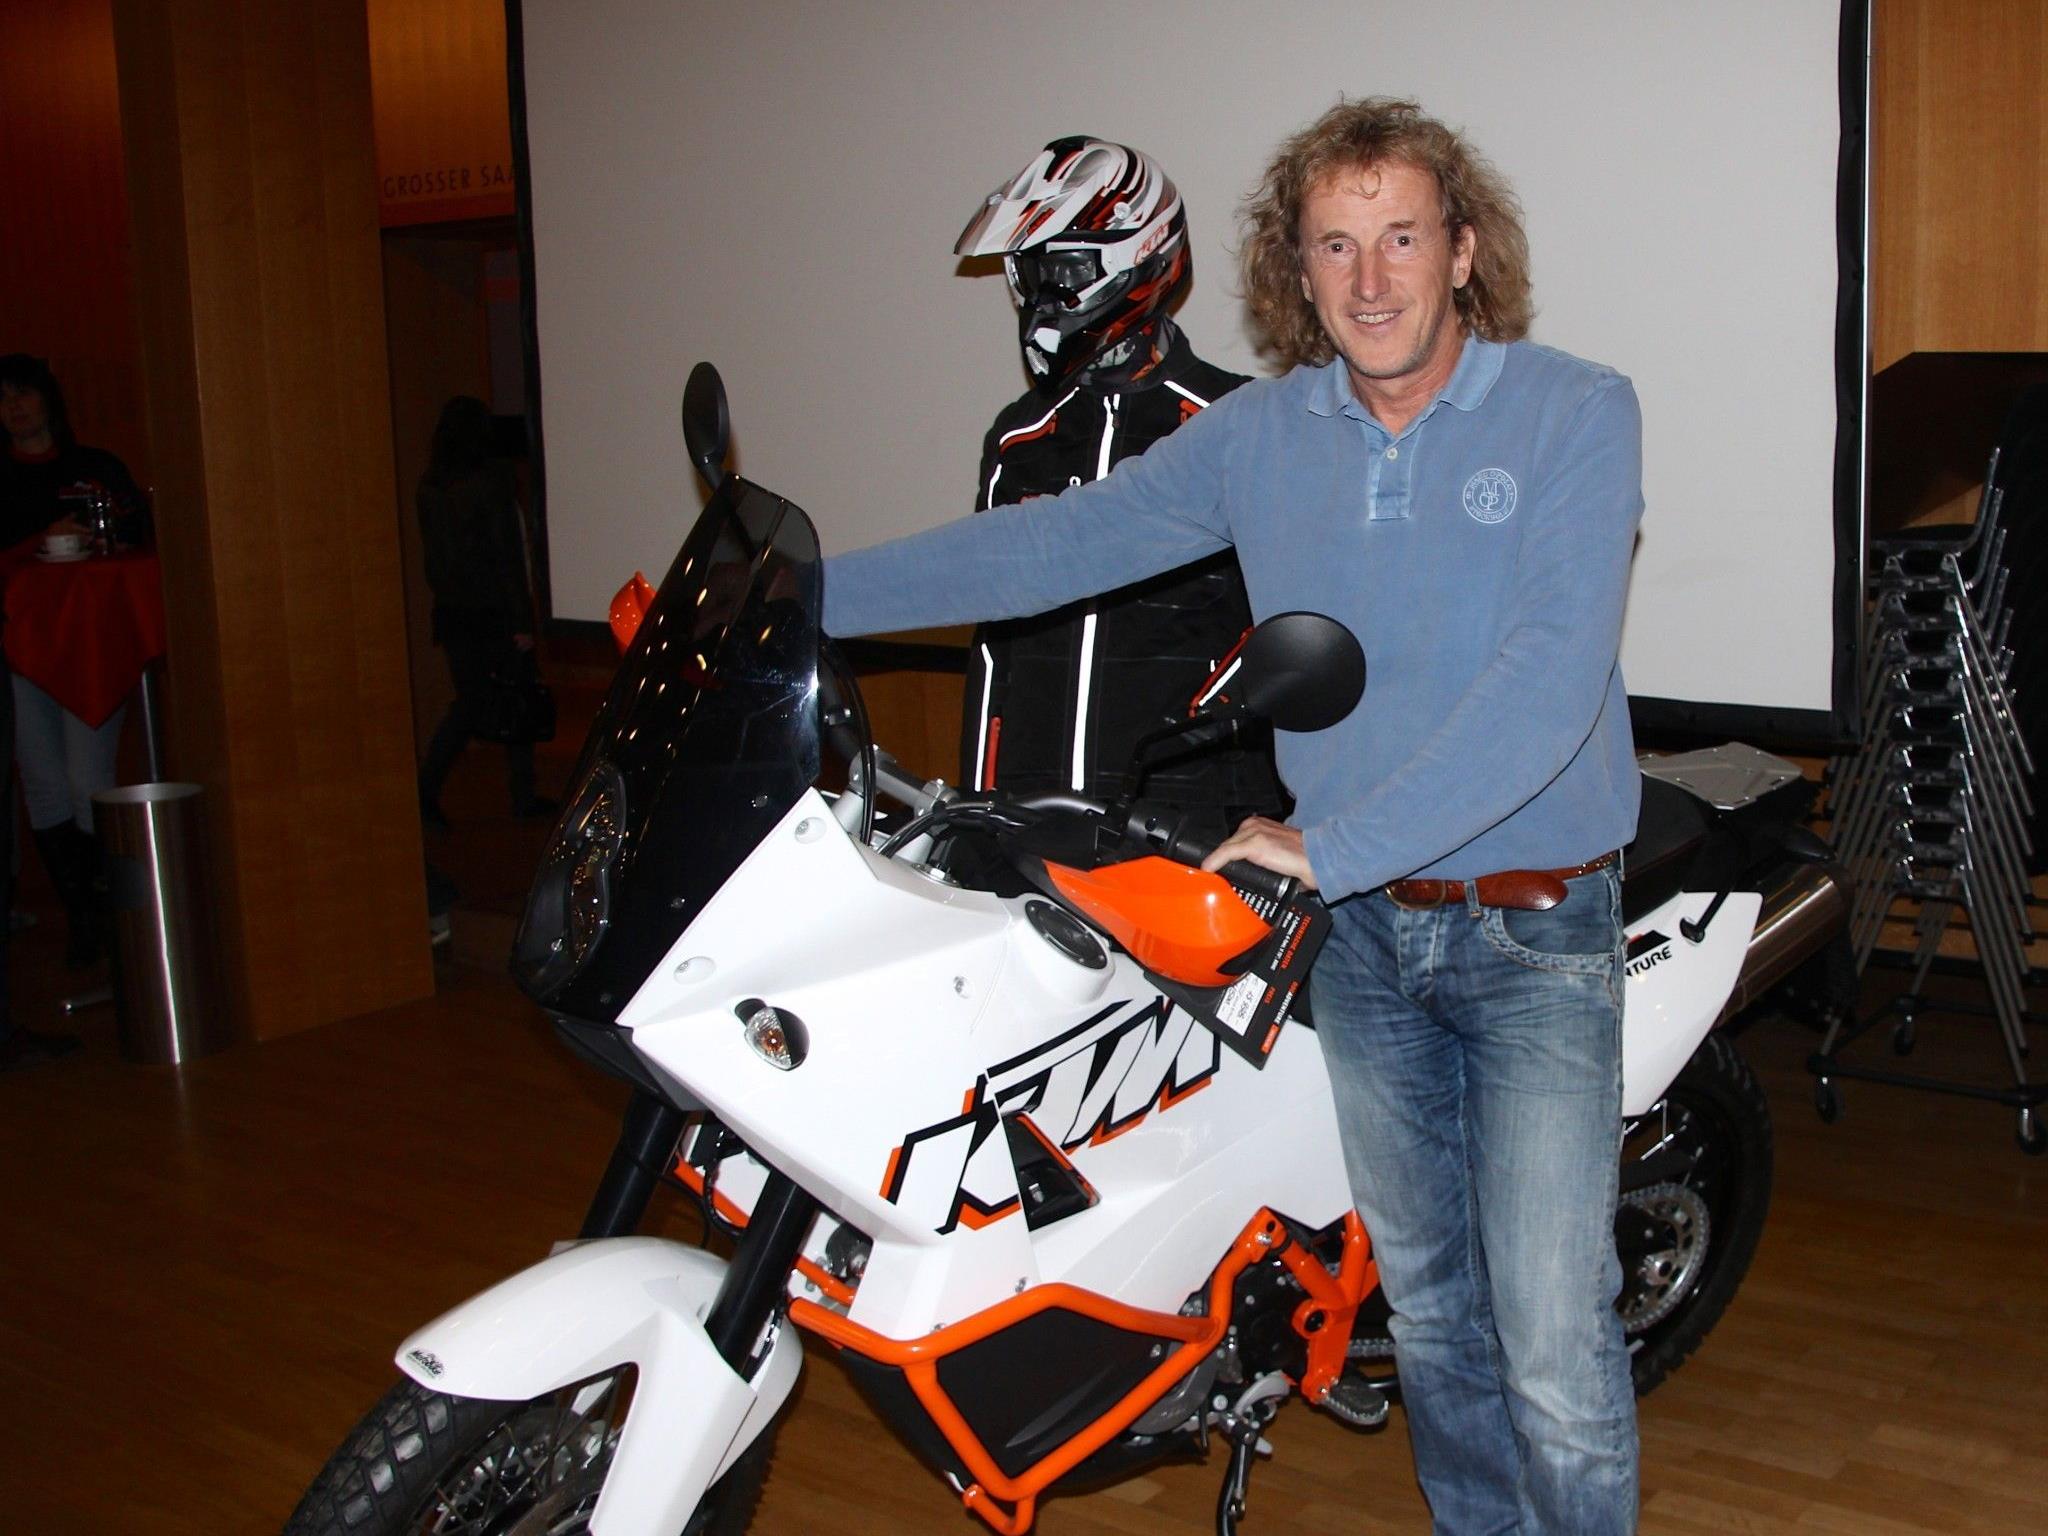 Josef Pichler zeigte sich in der Kulturbühne AmBach mit einem seiner KTM-Motorrädern, die ihn auf allen Reisen ständig begleiten